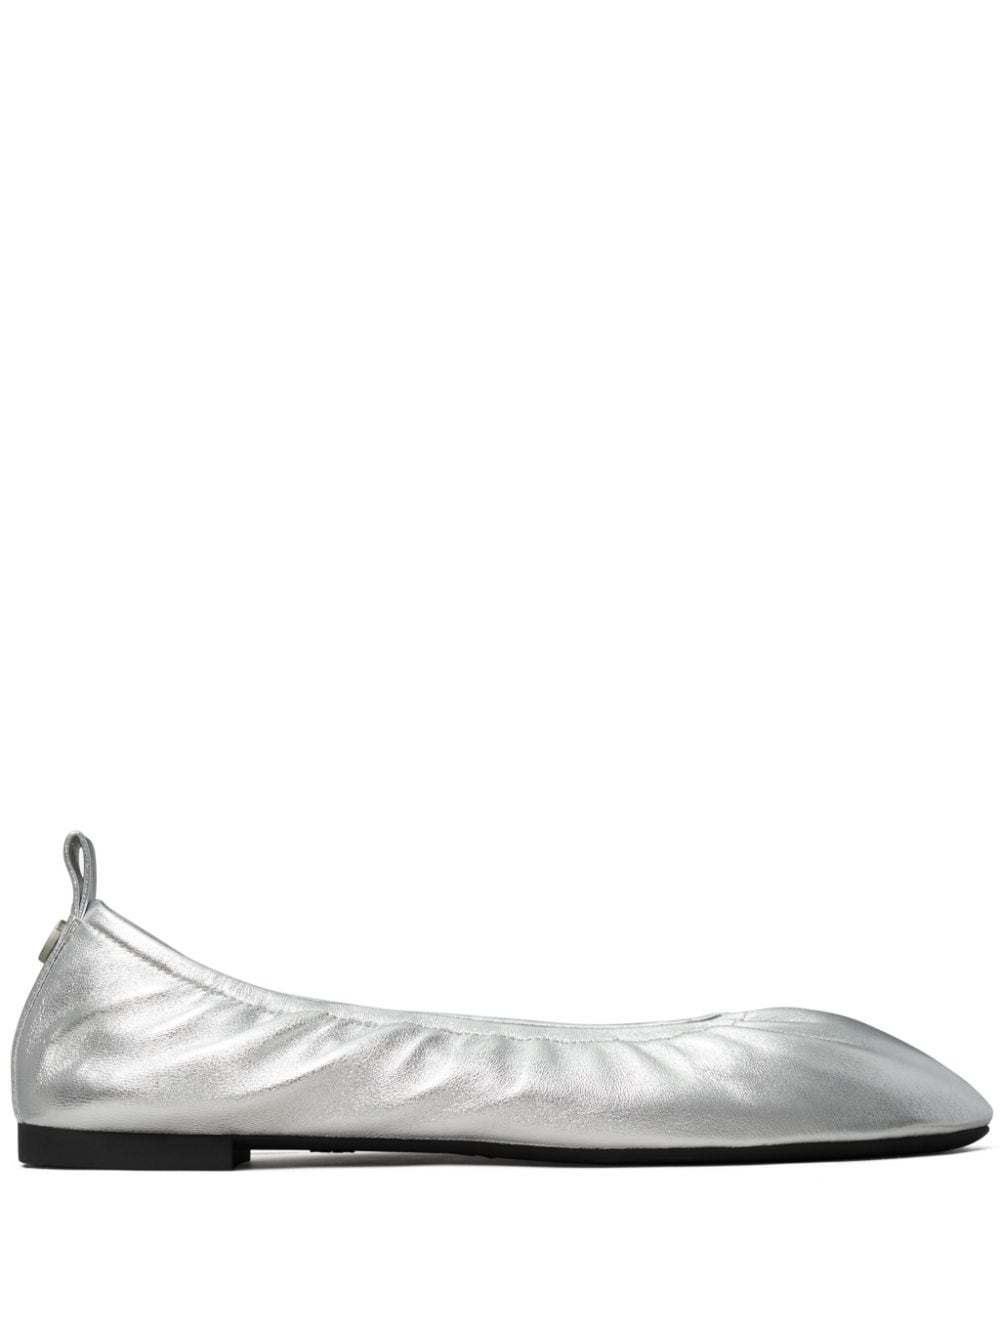 Tory Burch Eddie 2.0 ballerina shoes - Silver von Tory Burch